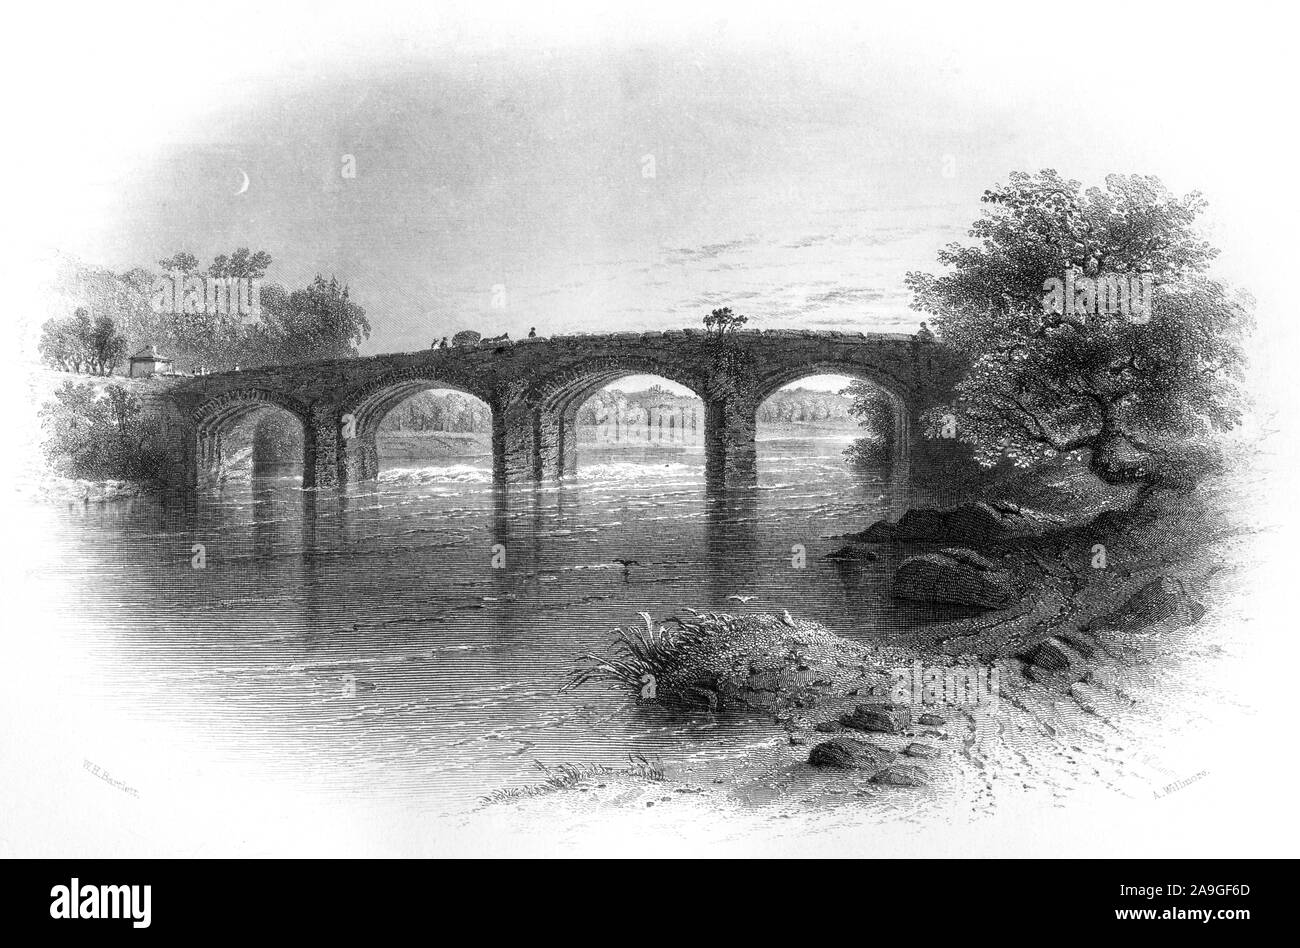 Ein Kupferstich von Bothwell Brücke gescannt und in hoher Auflösung aus einem Buch im Jahre 1859 gedruckt. Glaubten copyright frei. Stockfoto